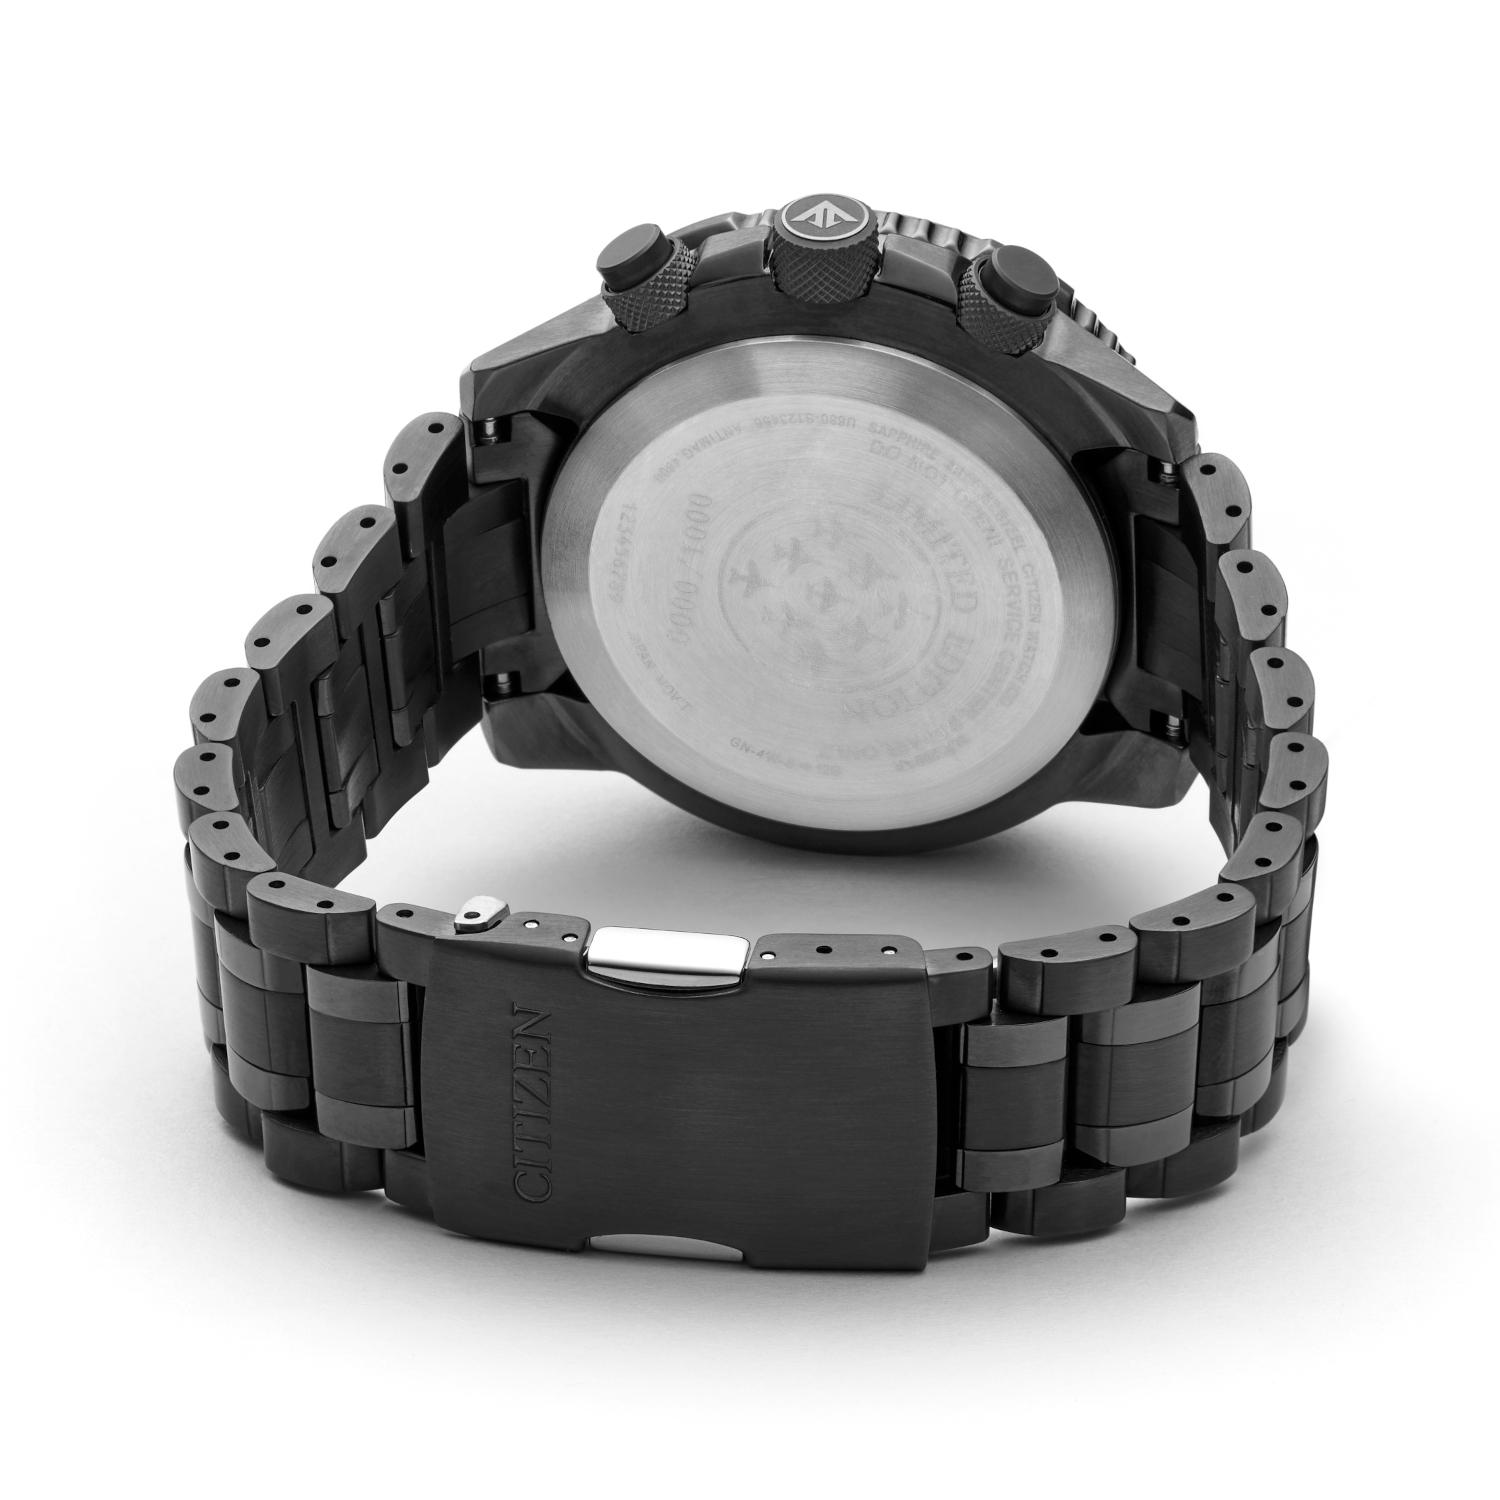 Citizen Women Eco-Drive Nighthawk Stainless Steel Bracelet Watch 36mm  FD2040-57A | Stainless steel bracelet, Citizen watch, Bracelet watch